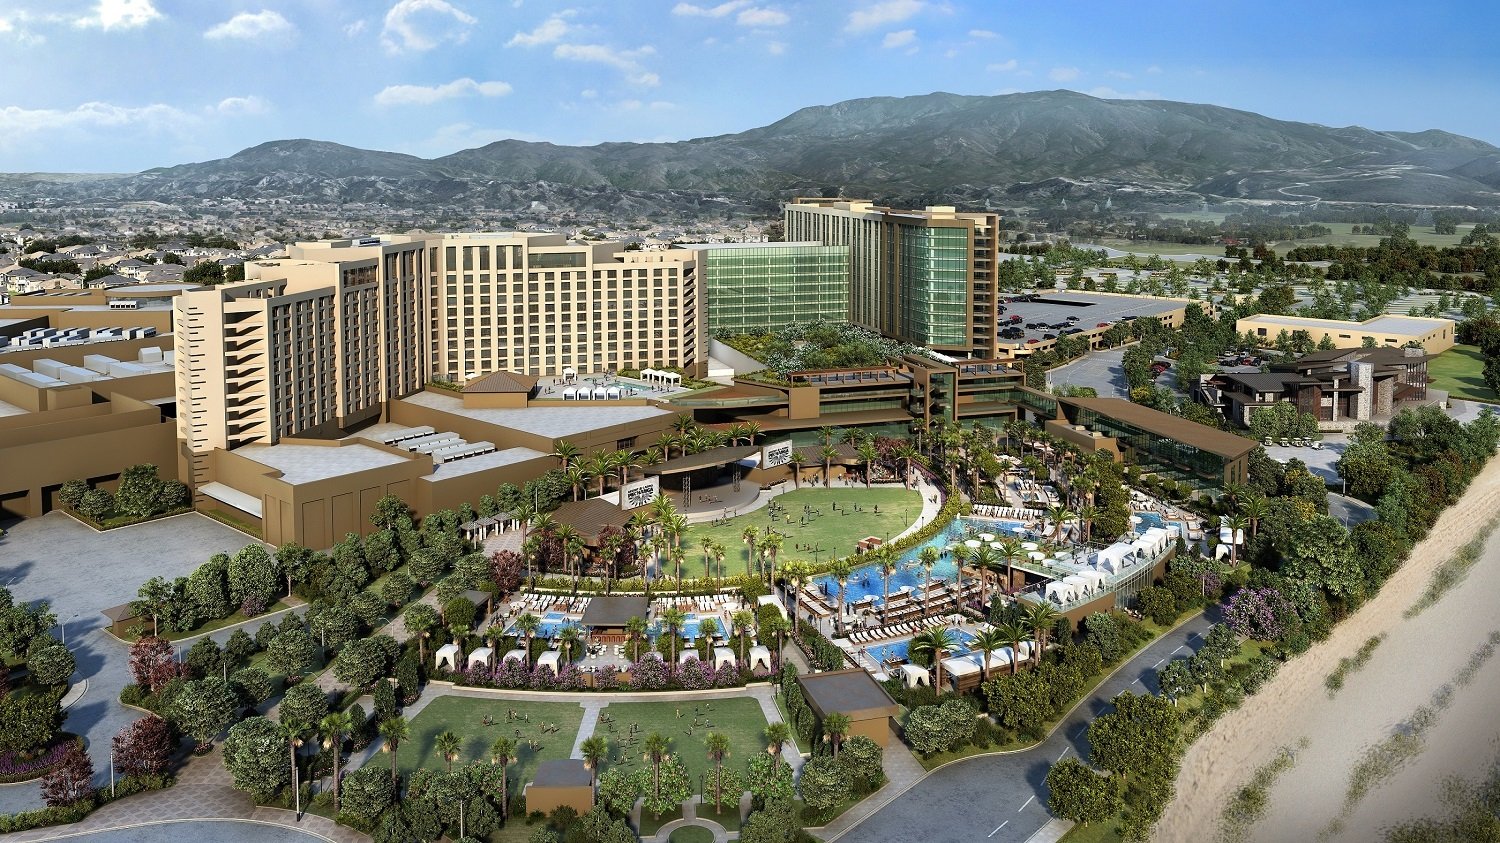 where is pechanga resort casino located